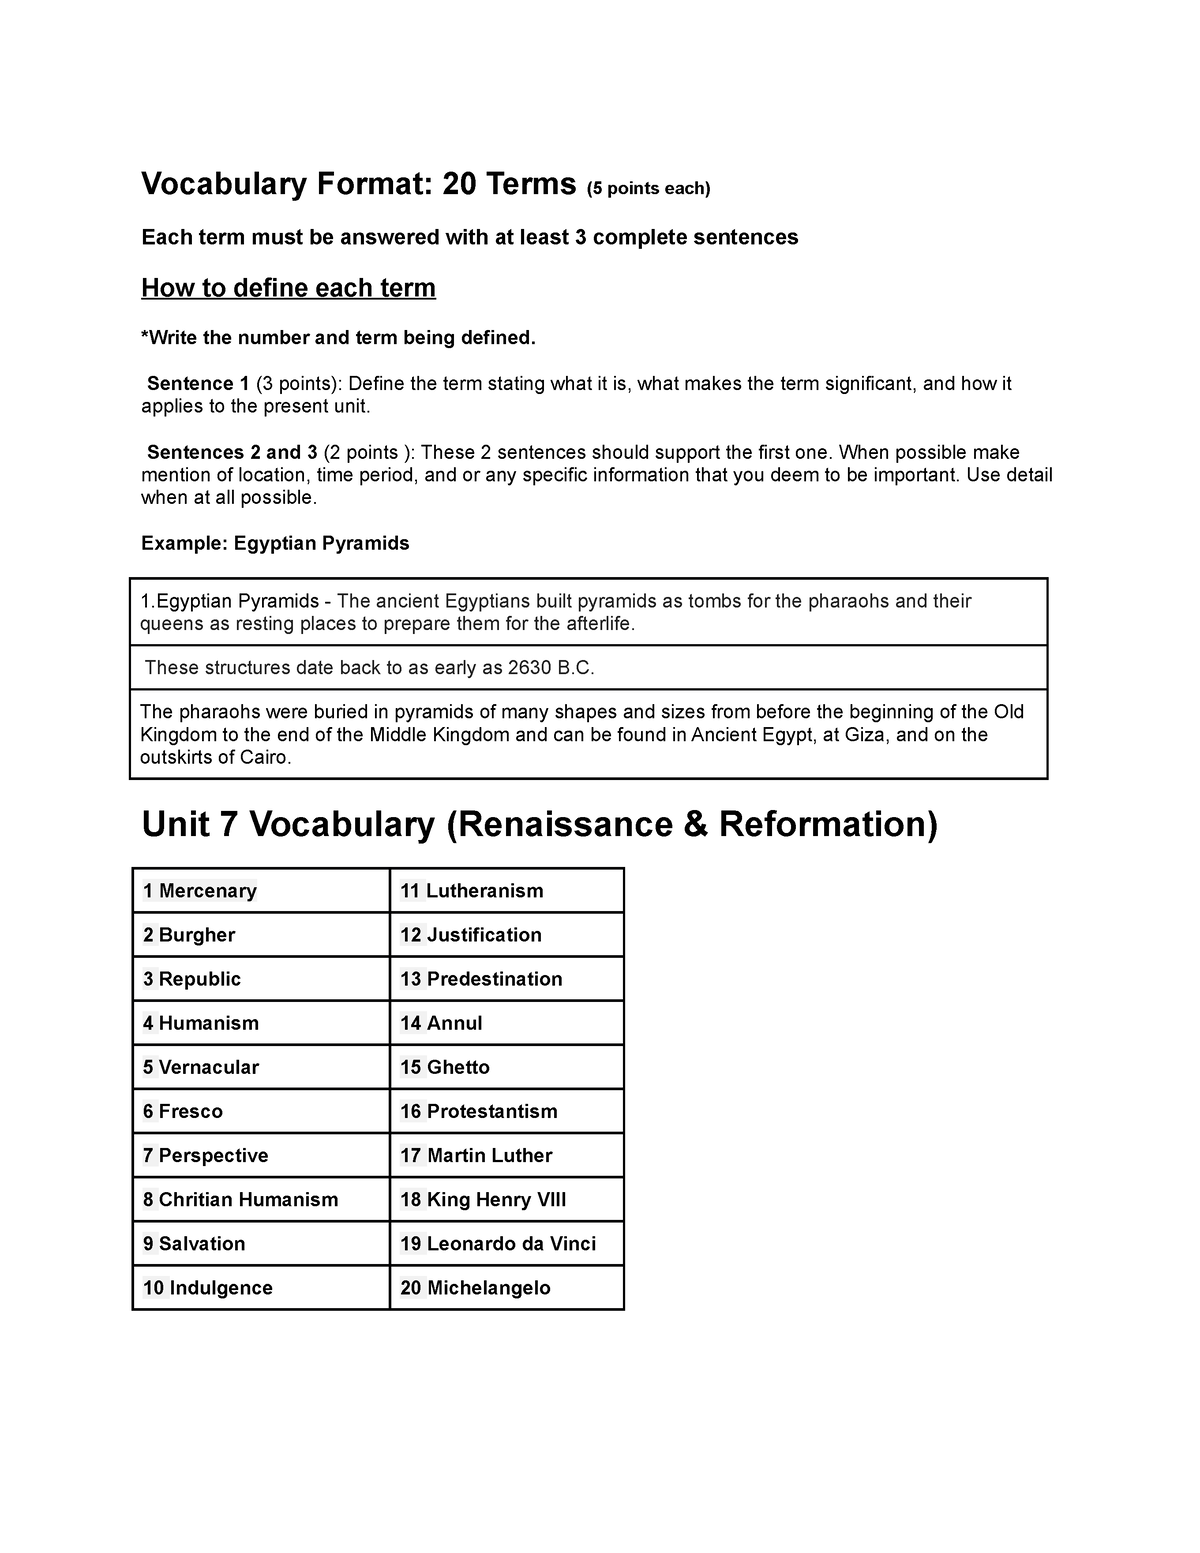 assignment vocabulary term